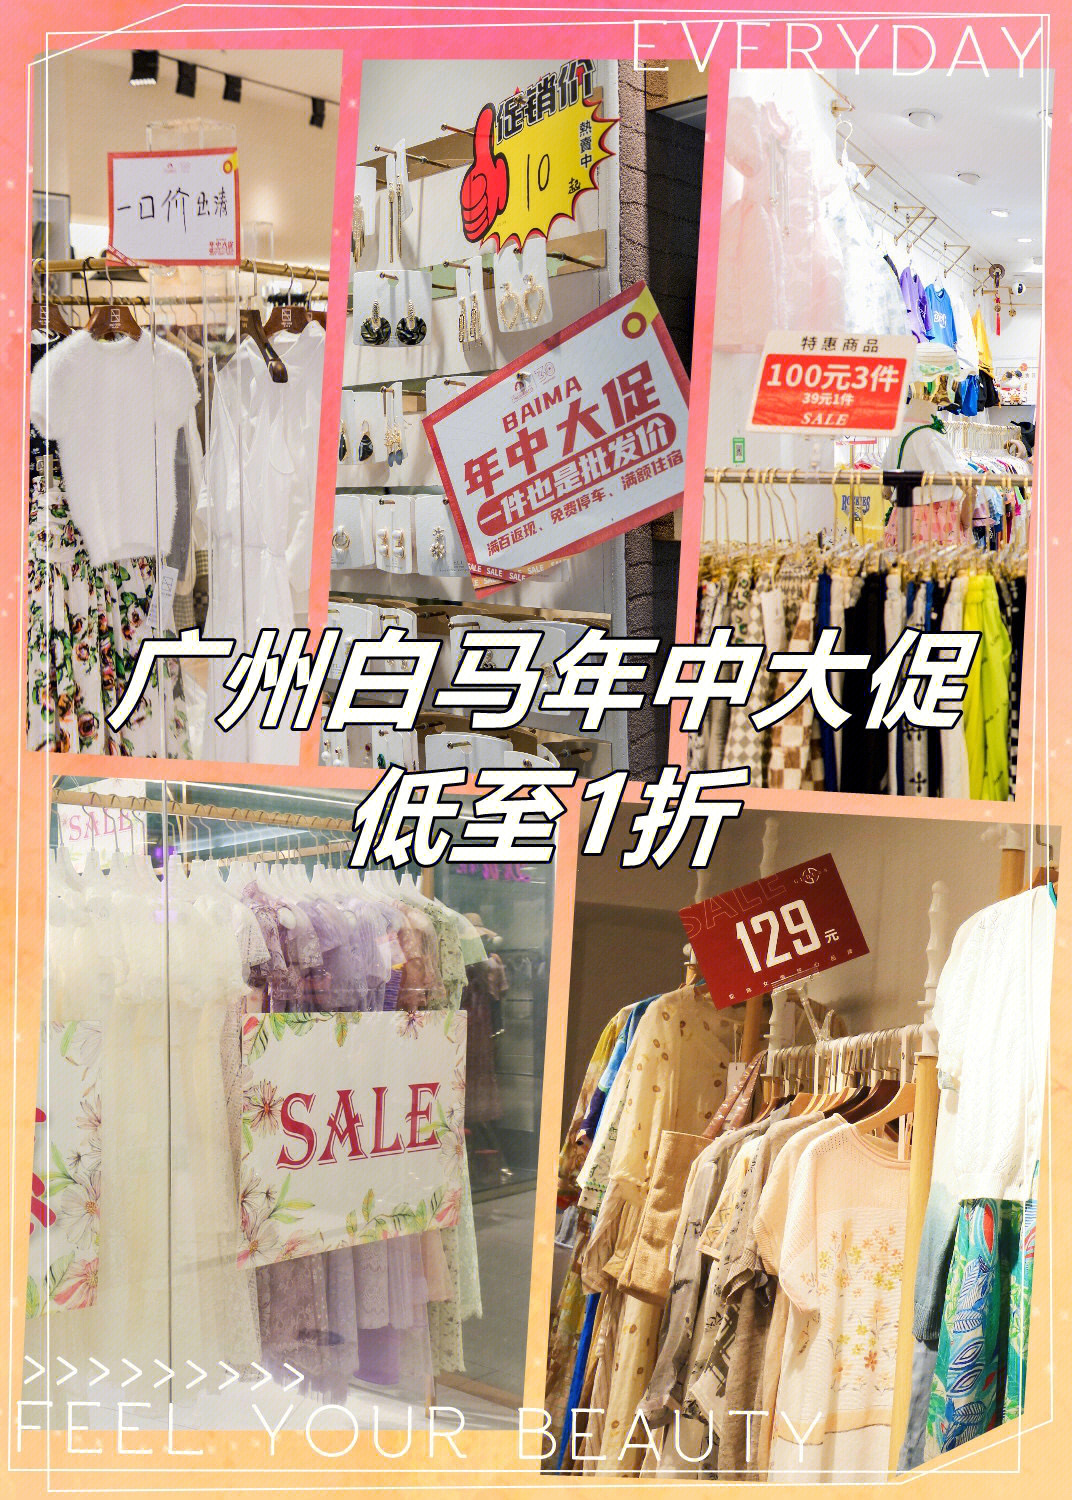 广州白马服装市场年中大促购物低至一折75